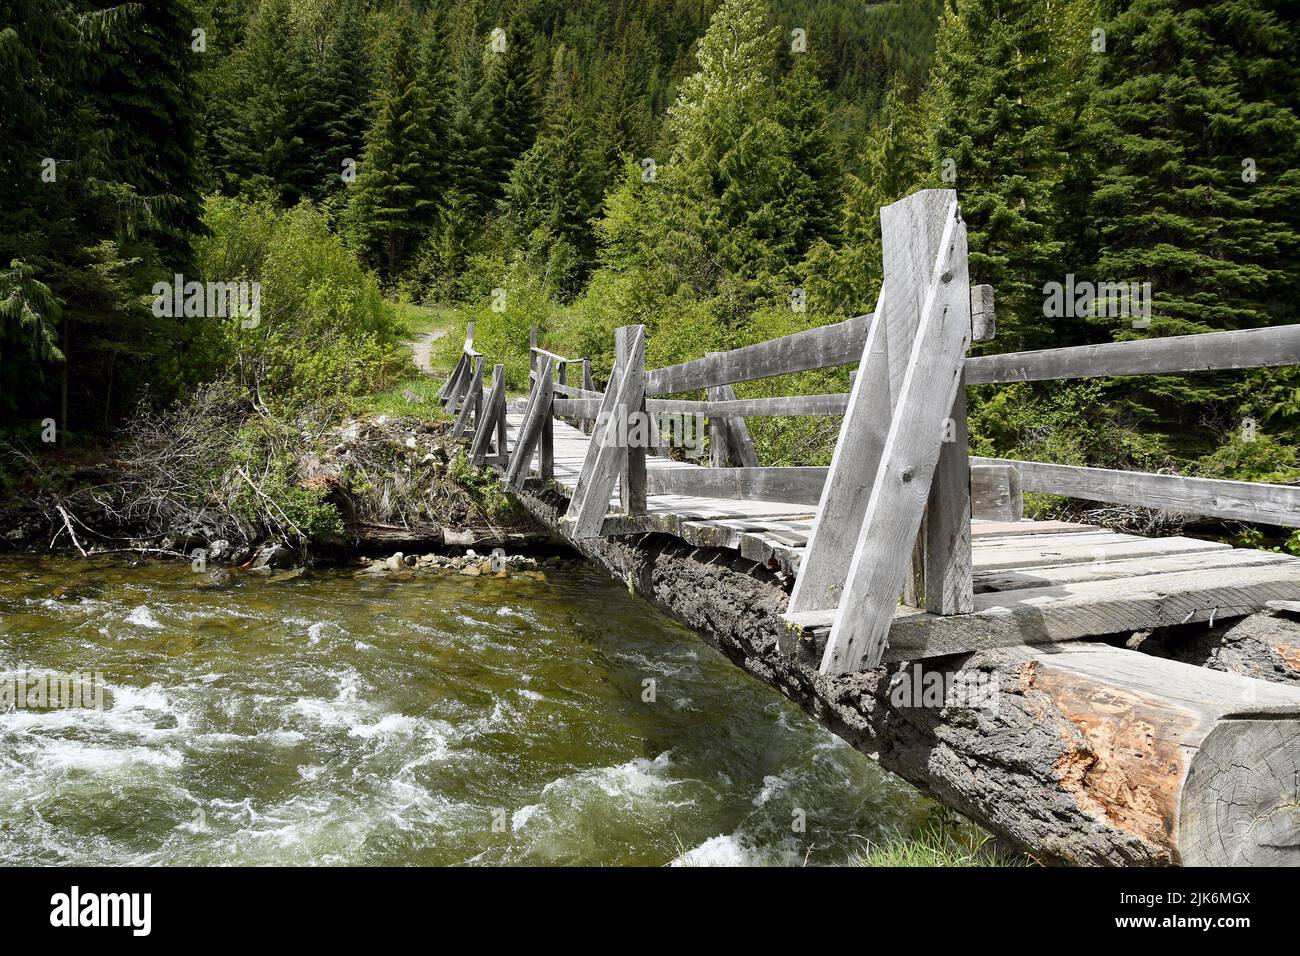 Puente hecho de madera talada a través de un pequeño río con agua clara. El camino conduce a un forerst. Ninguna gente. Foto de stock